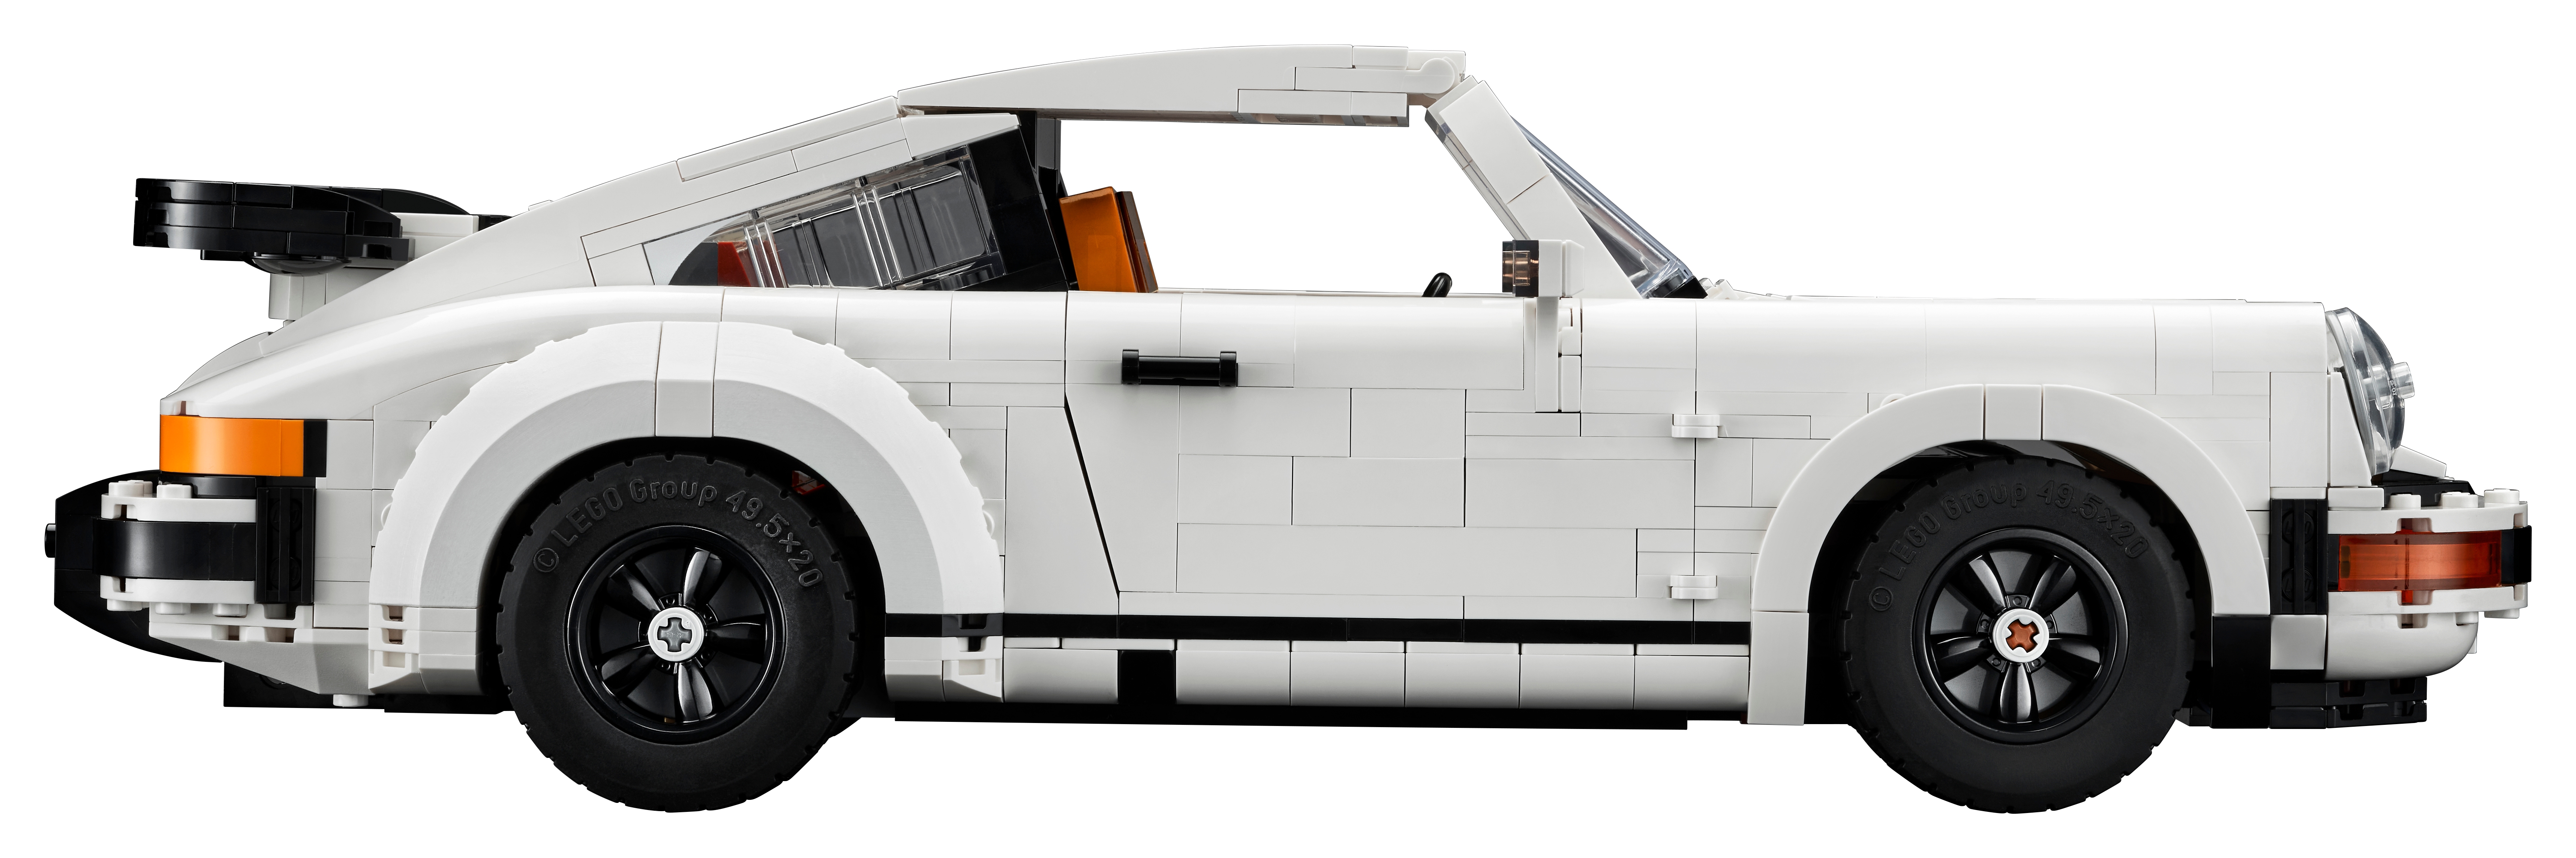 Sur le Shop LEGO : le set 10295 Porsche 911 Turbo & 911 Targa est